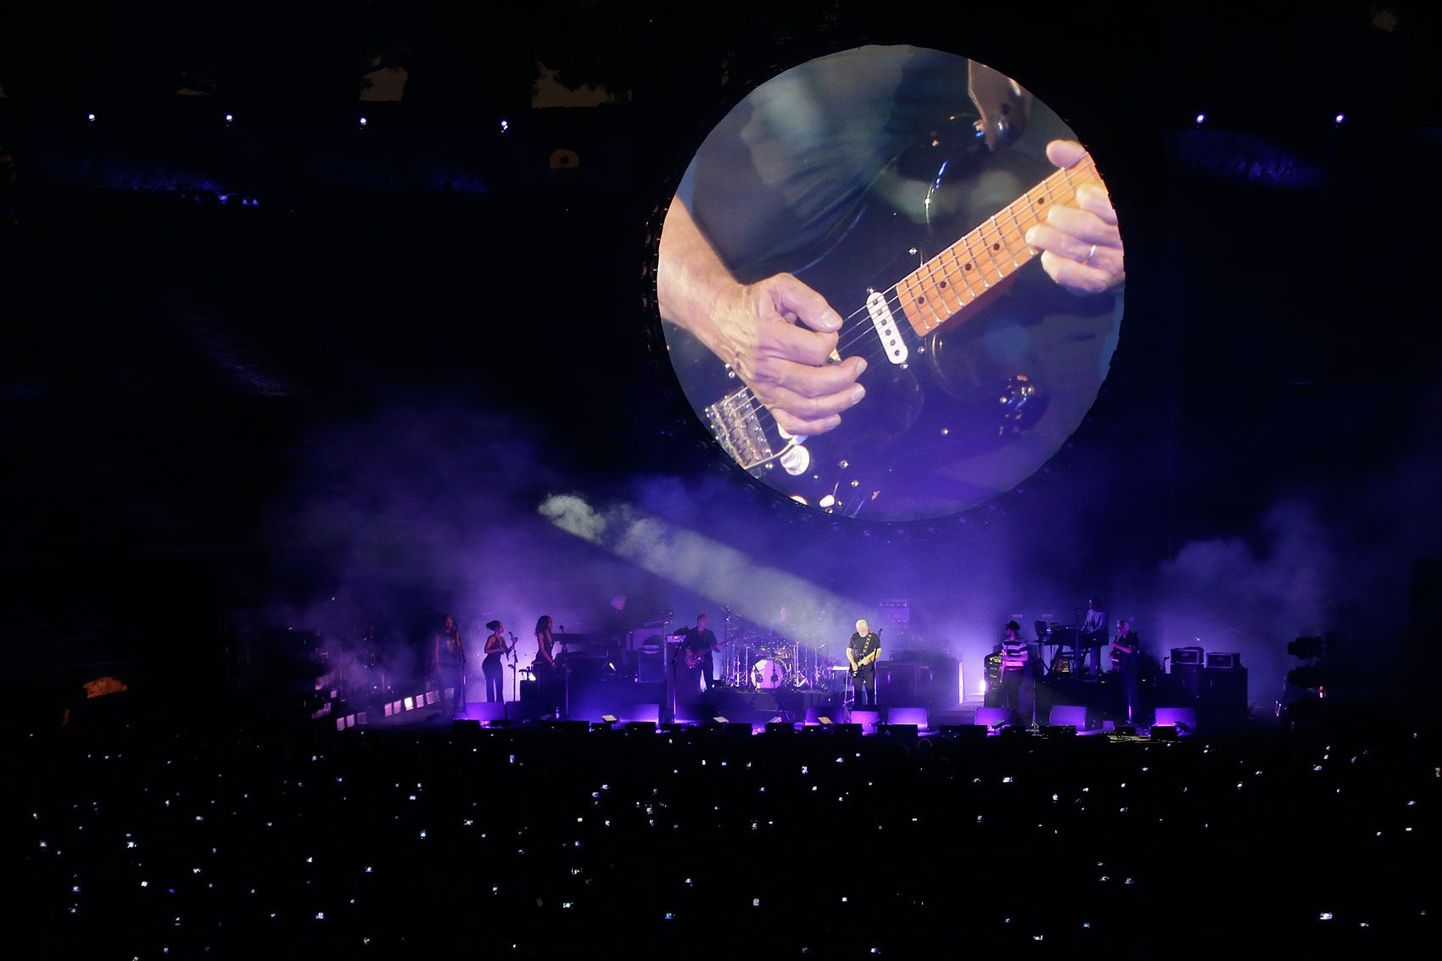 Unes või ilmsi: David Gilmouri tänavune kontserdikava on põhjalikust põhjalikum.